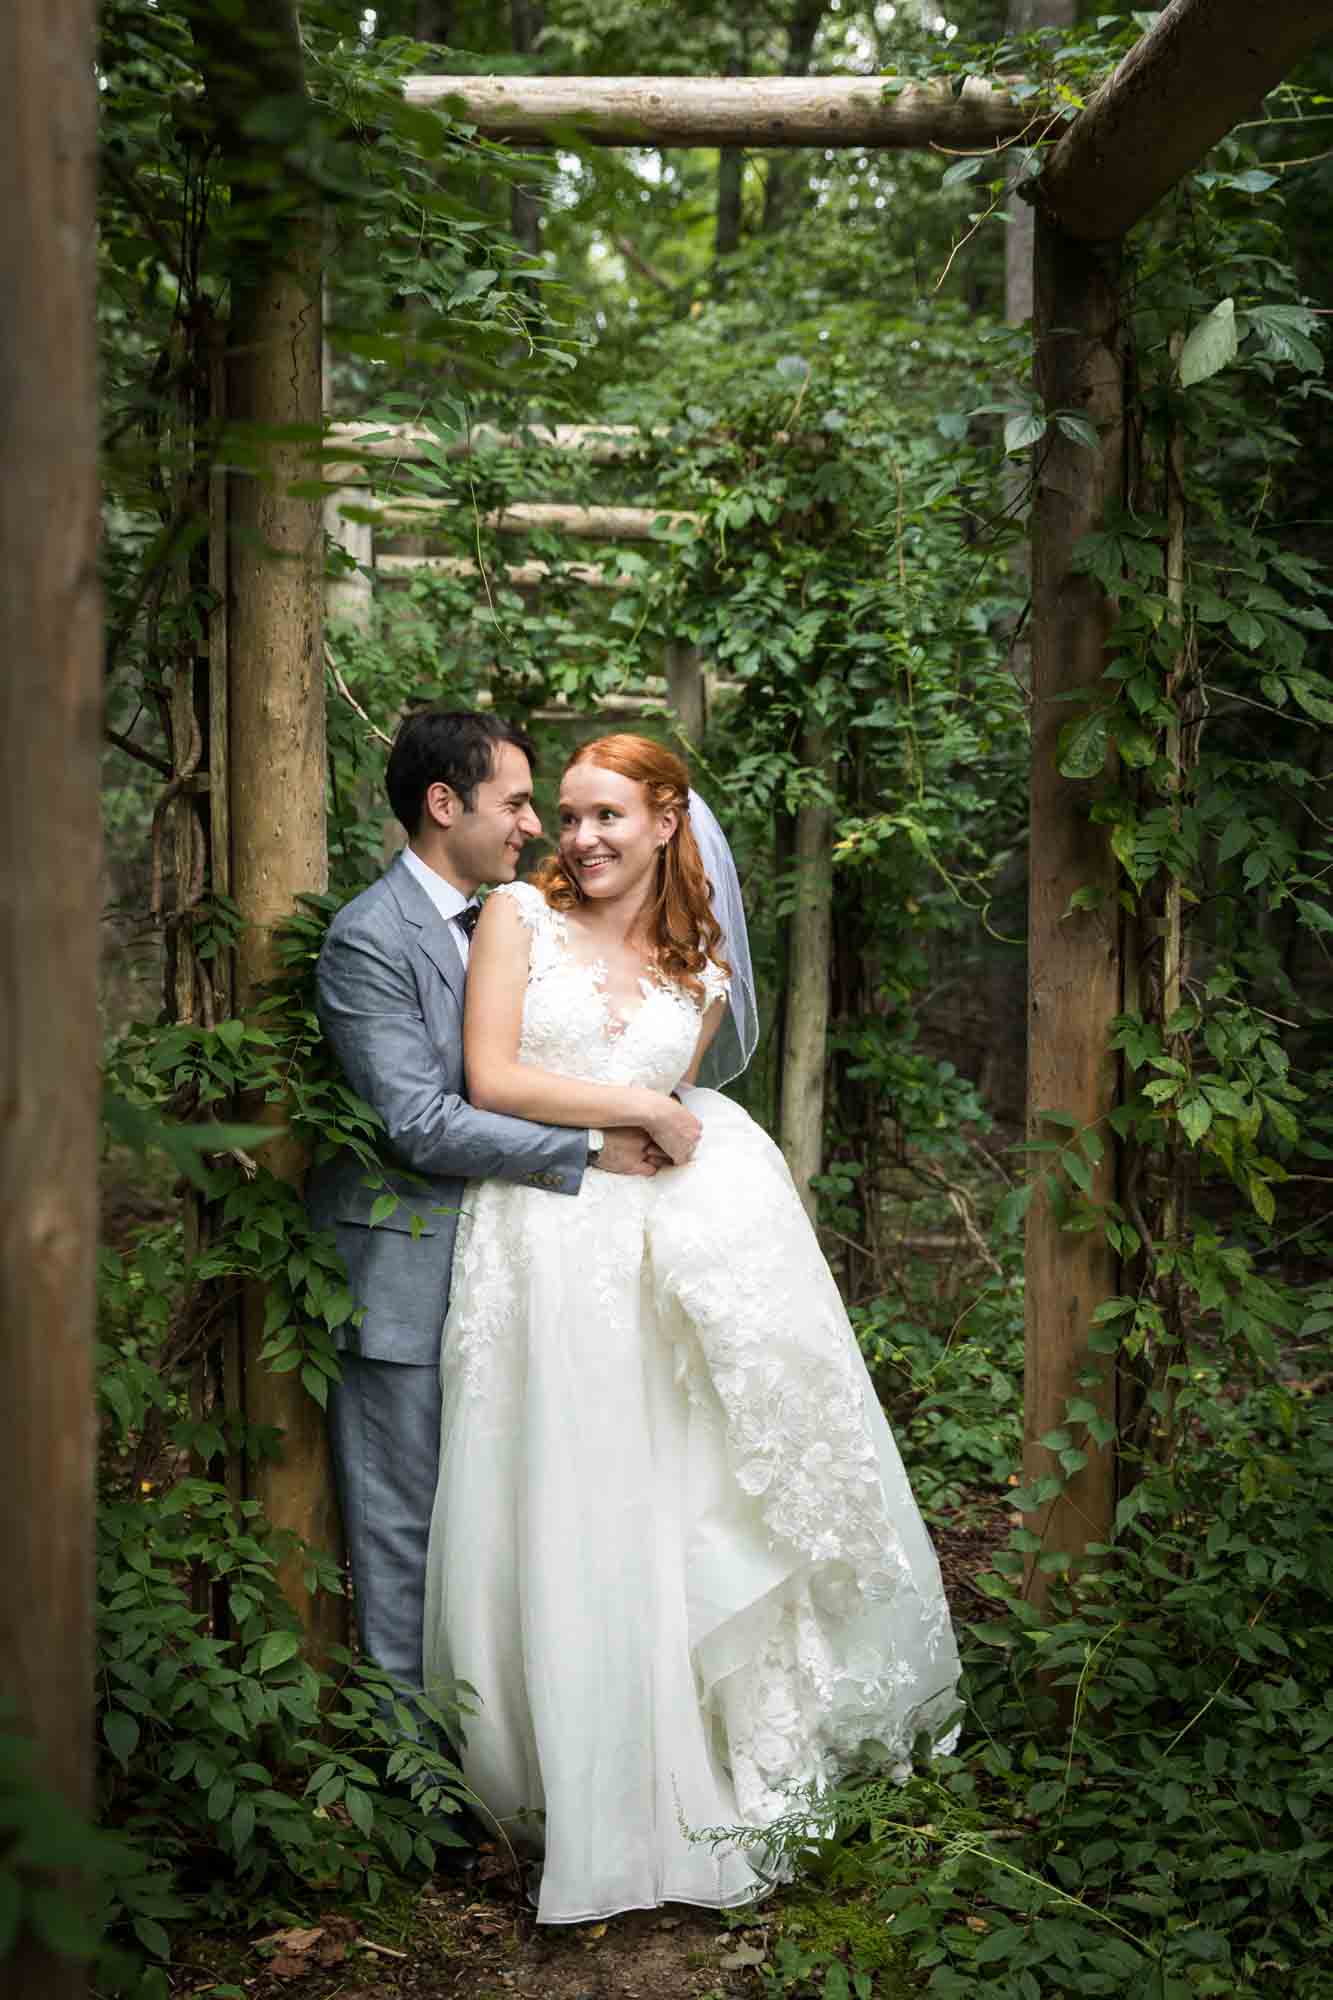 Bride and groom hugging under vine-covered fence